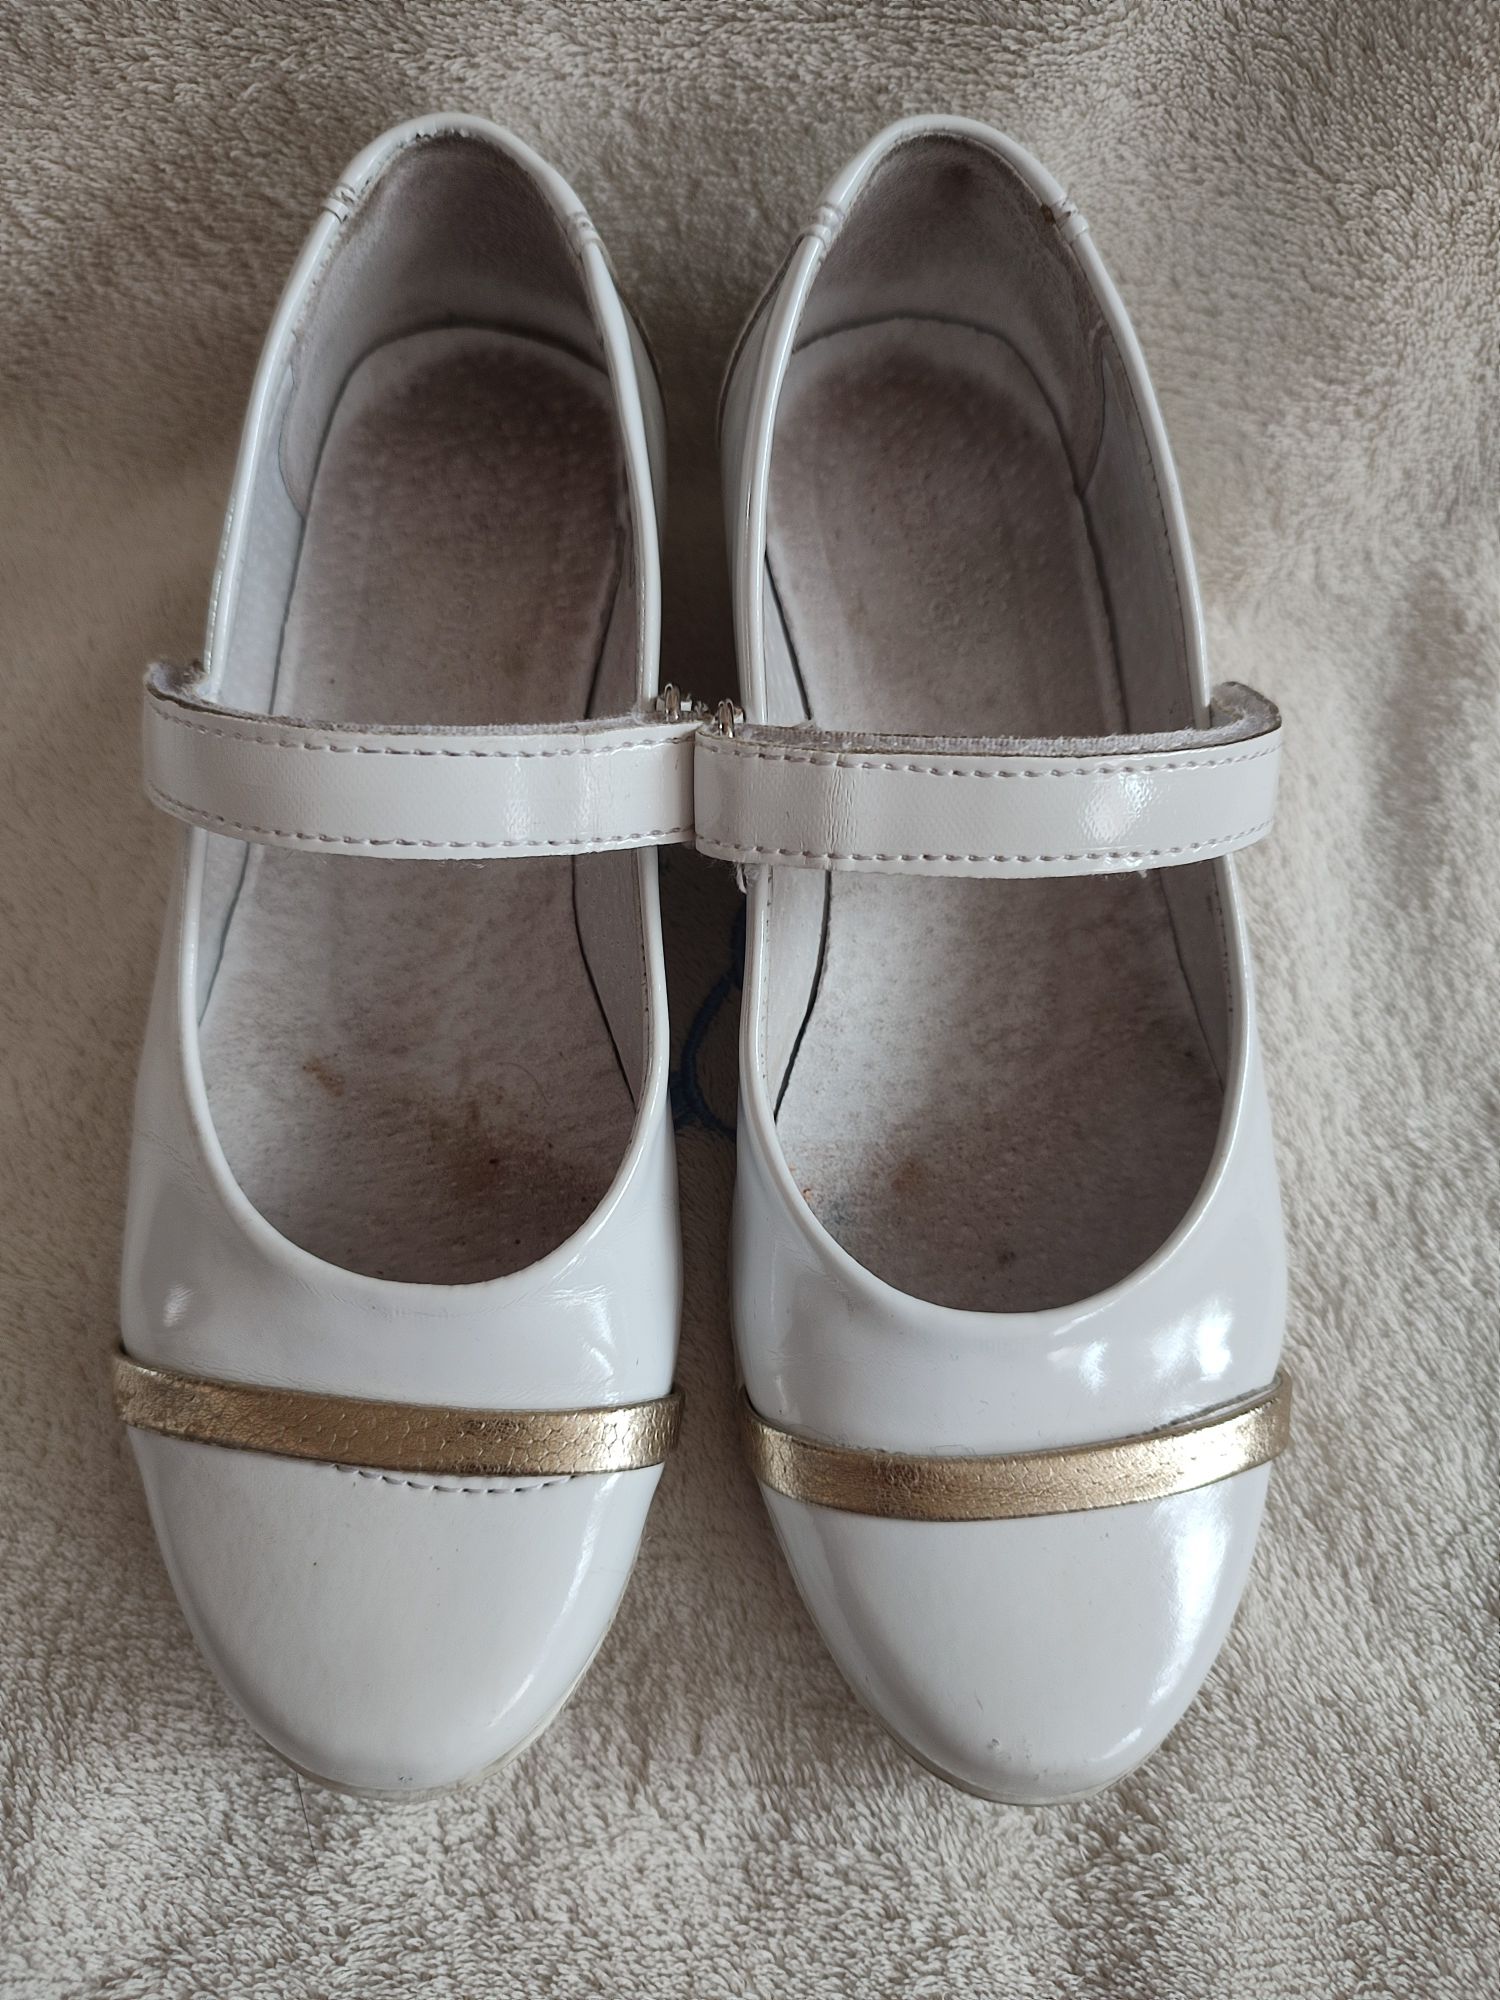 Białe eleganckie lakierowane buty do komunii świętej 32